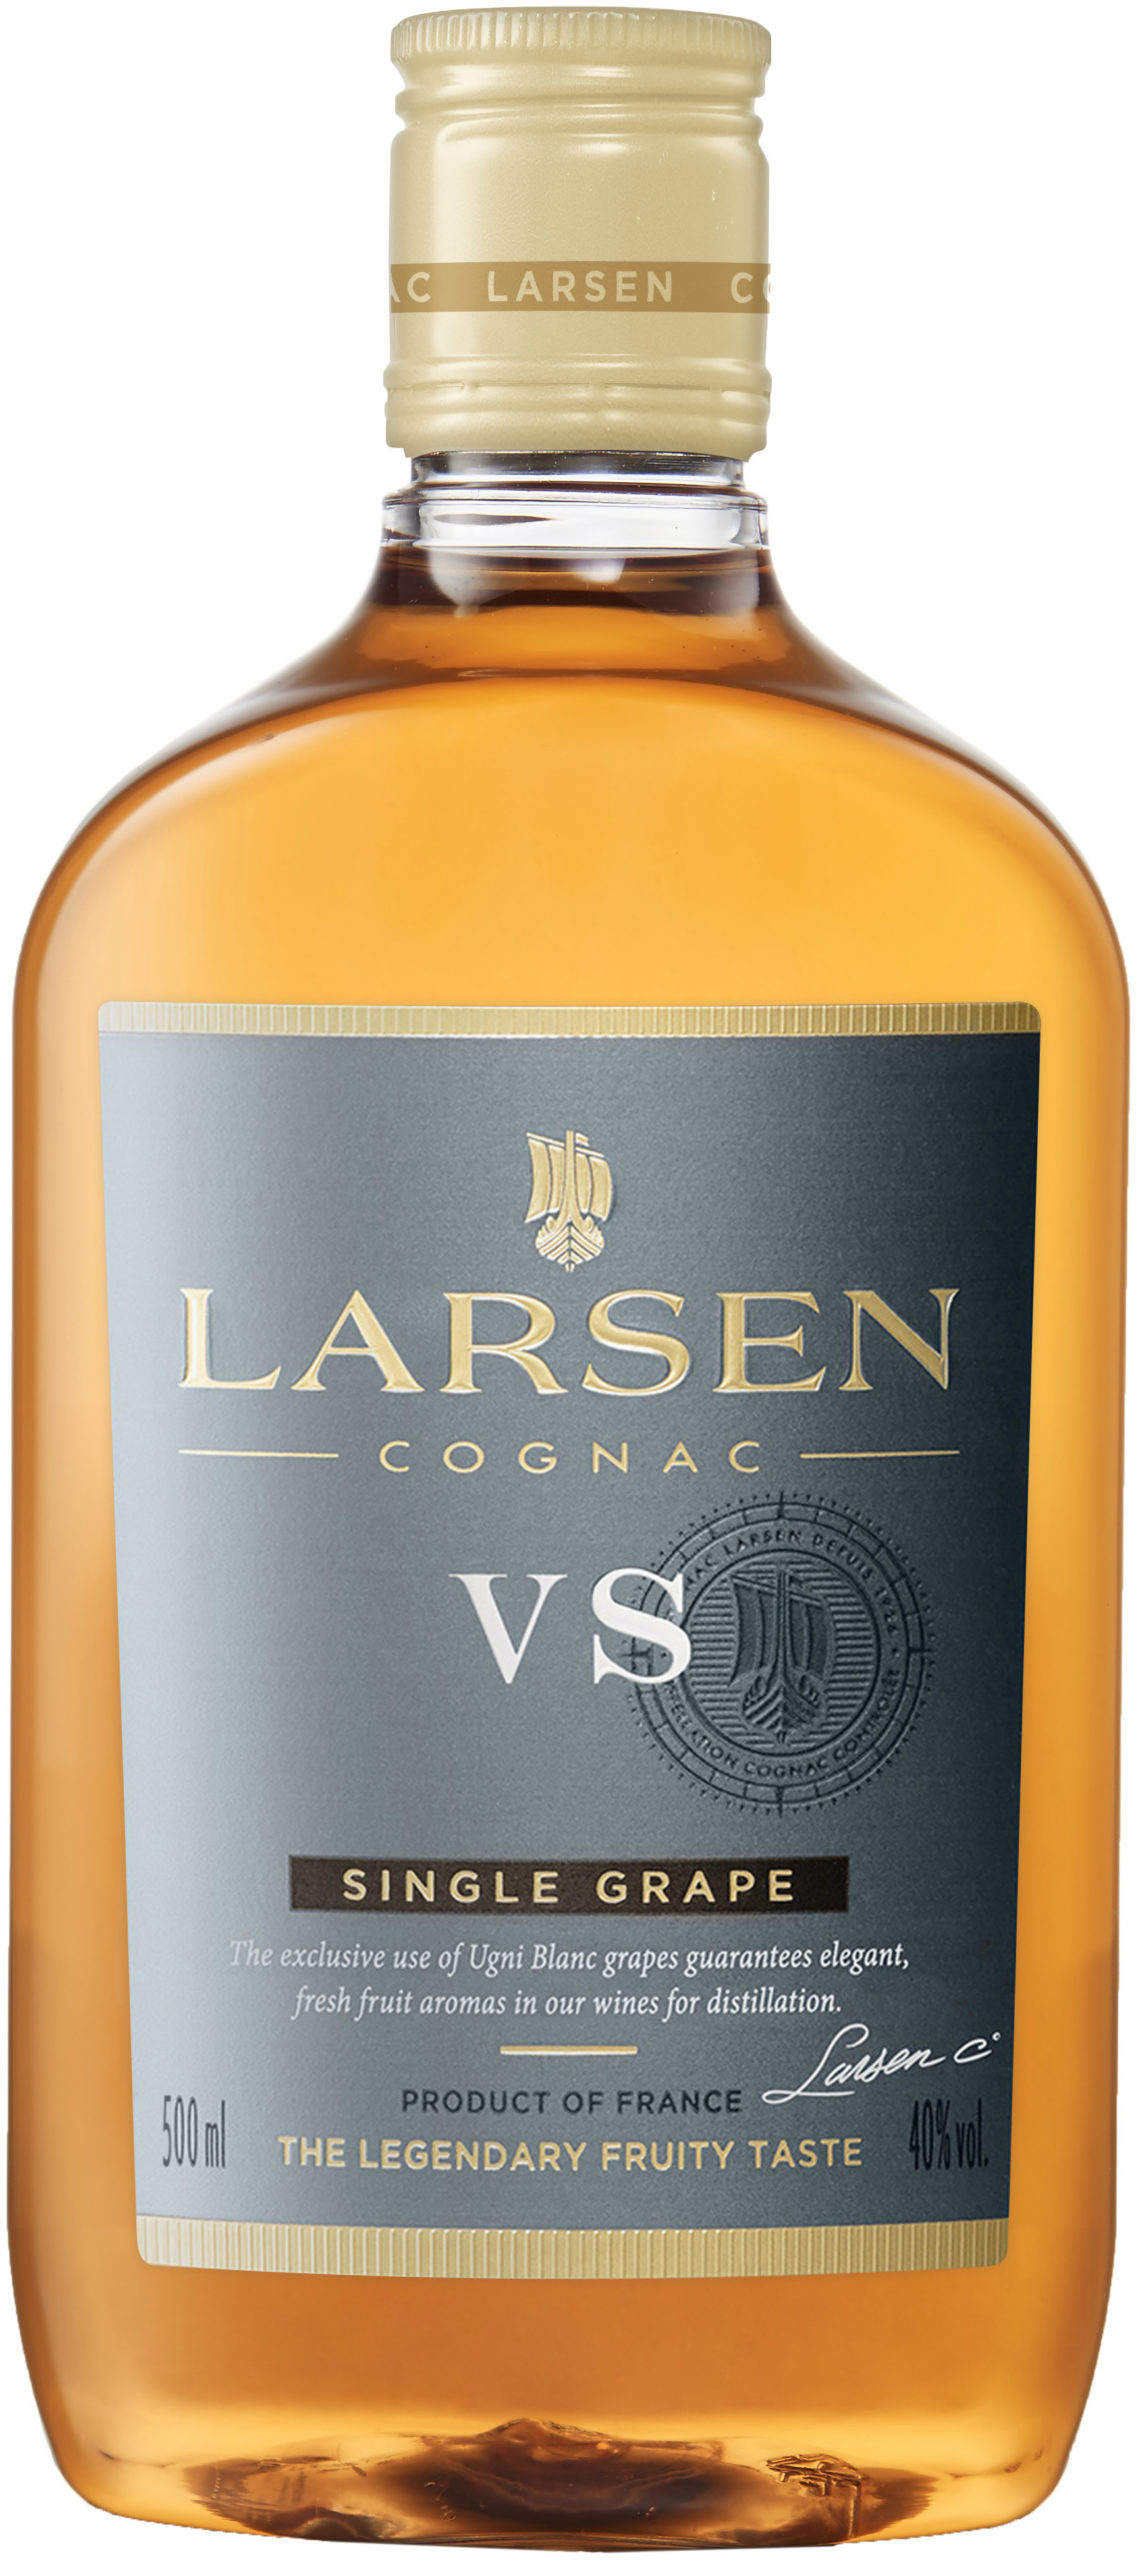 Larsen Very Special plastic bottle